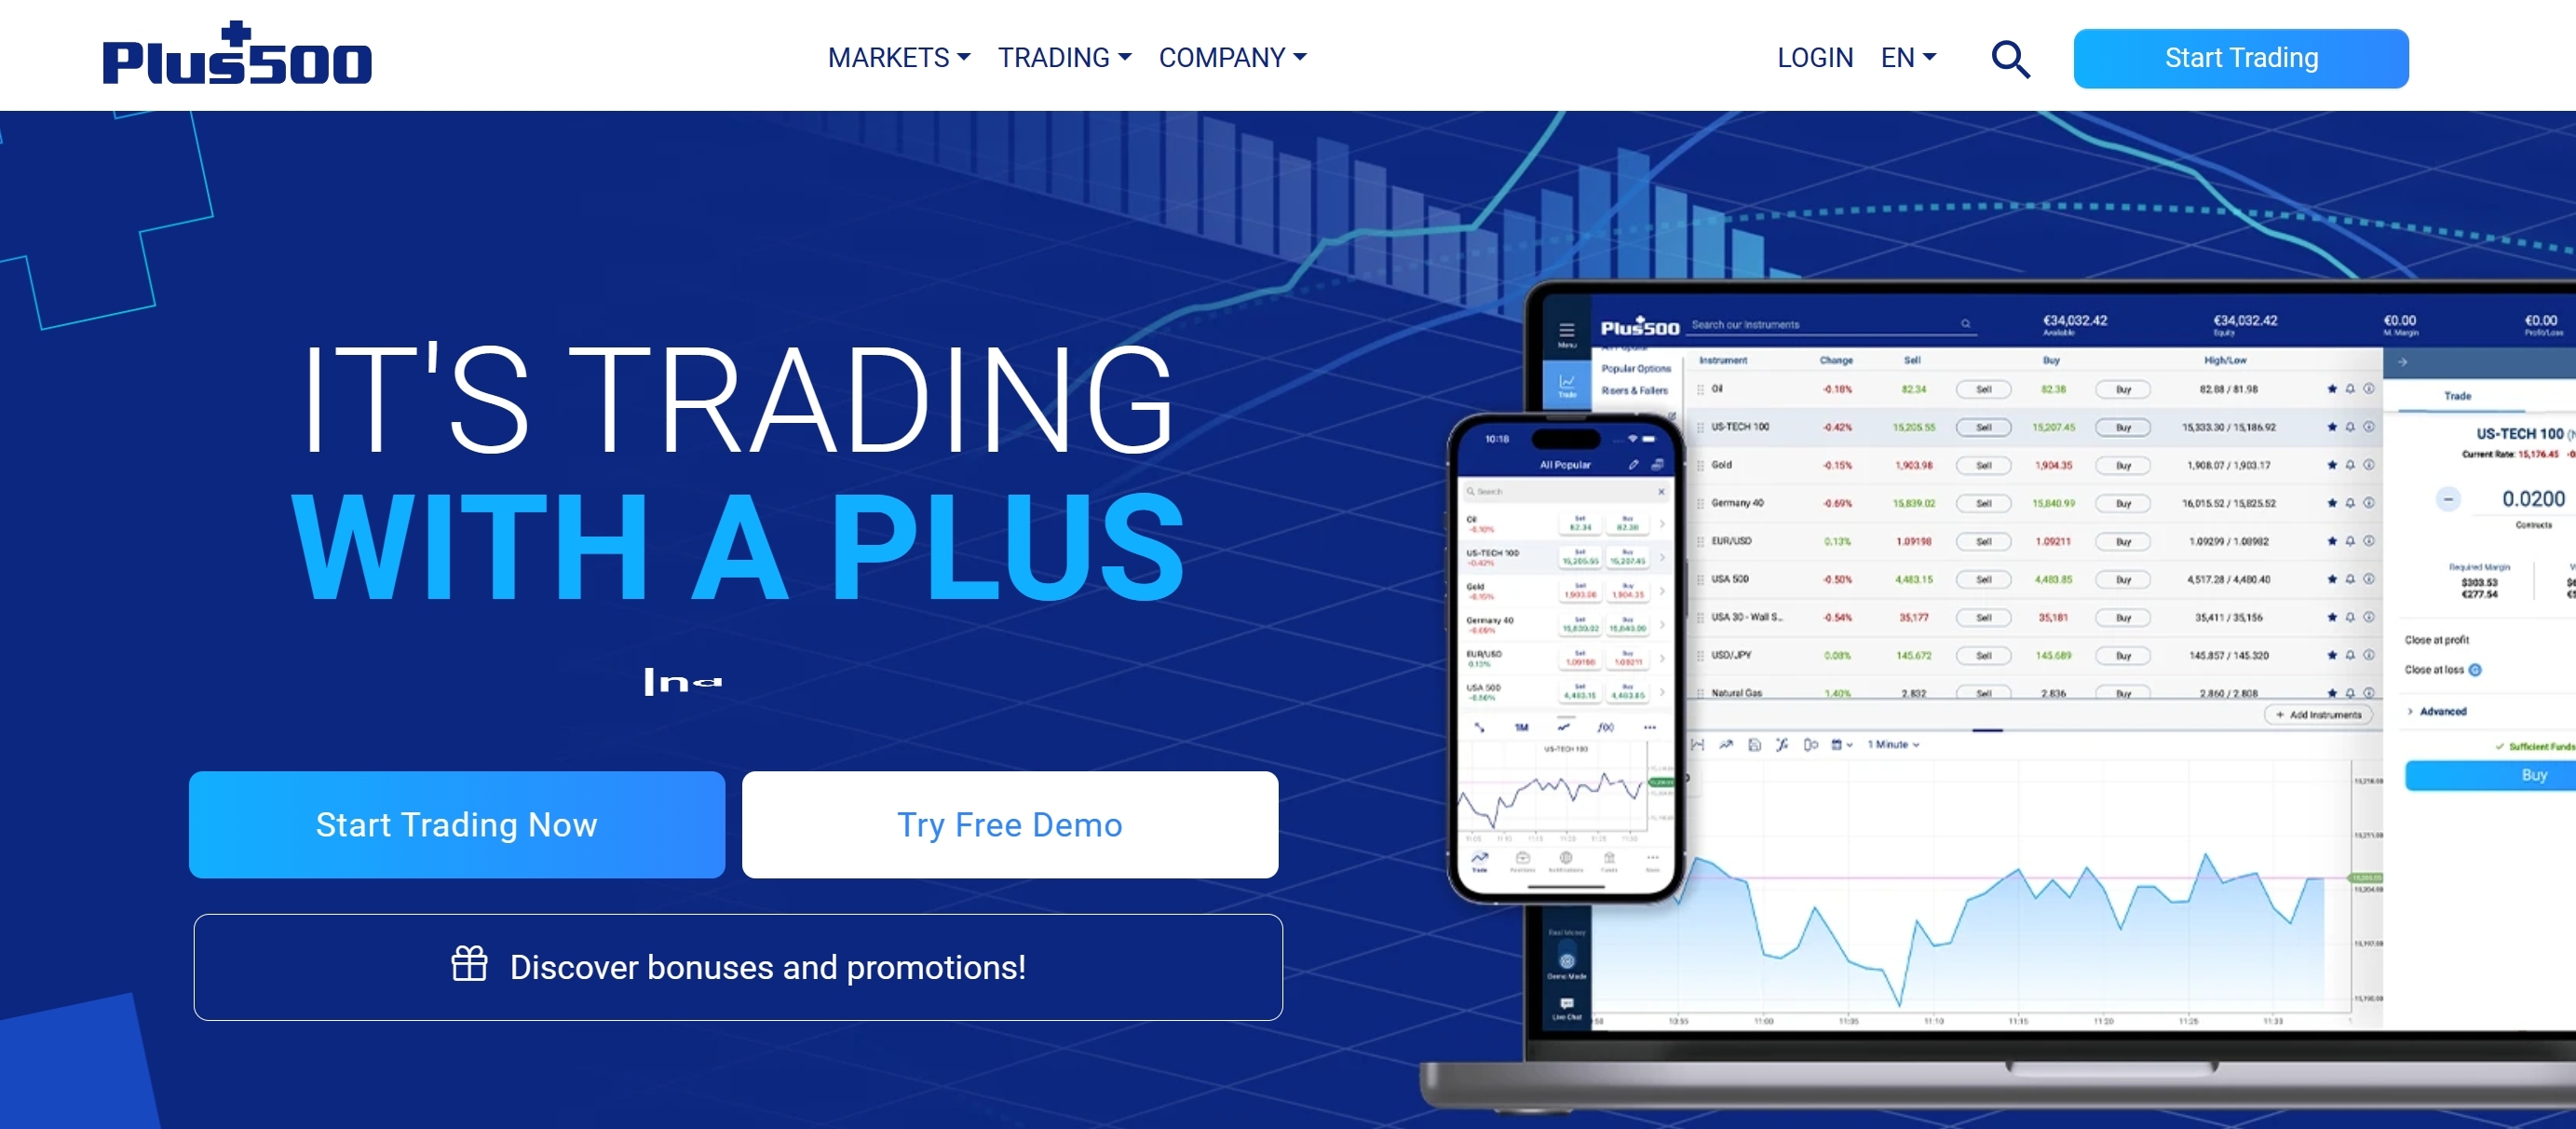 Plus500 trading platform